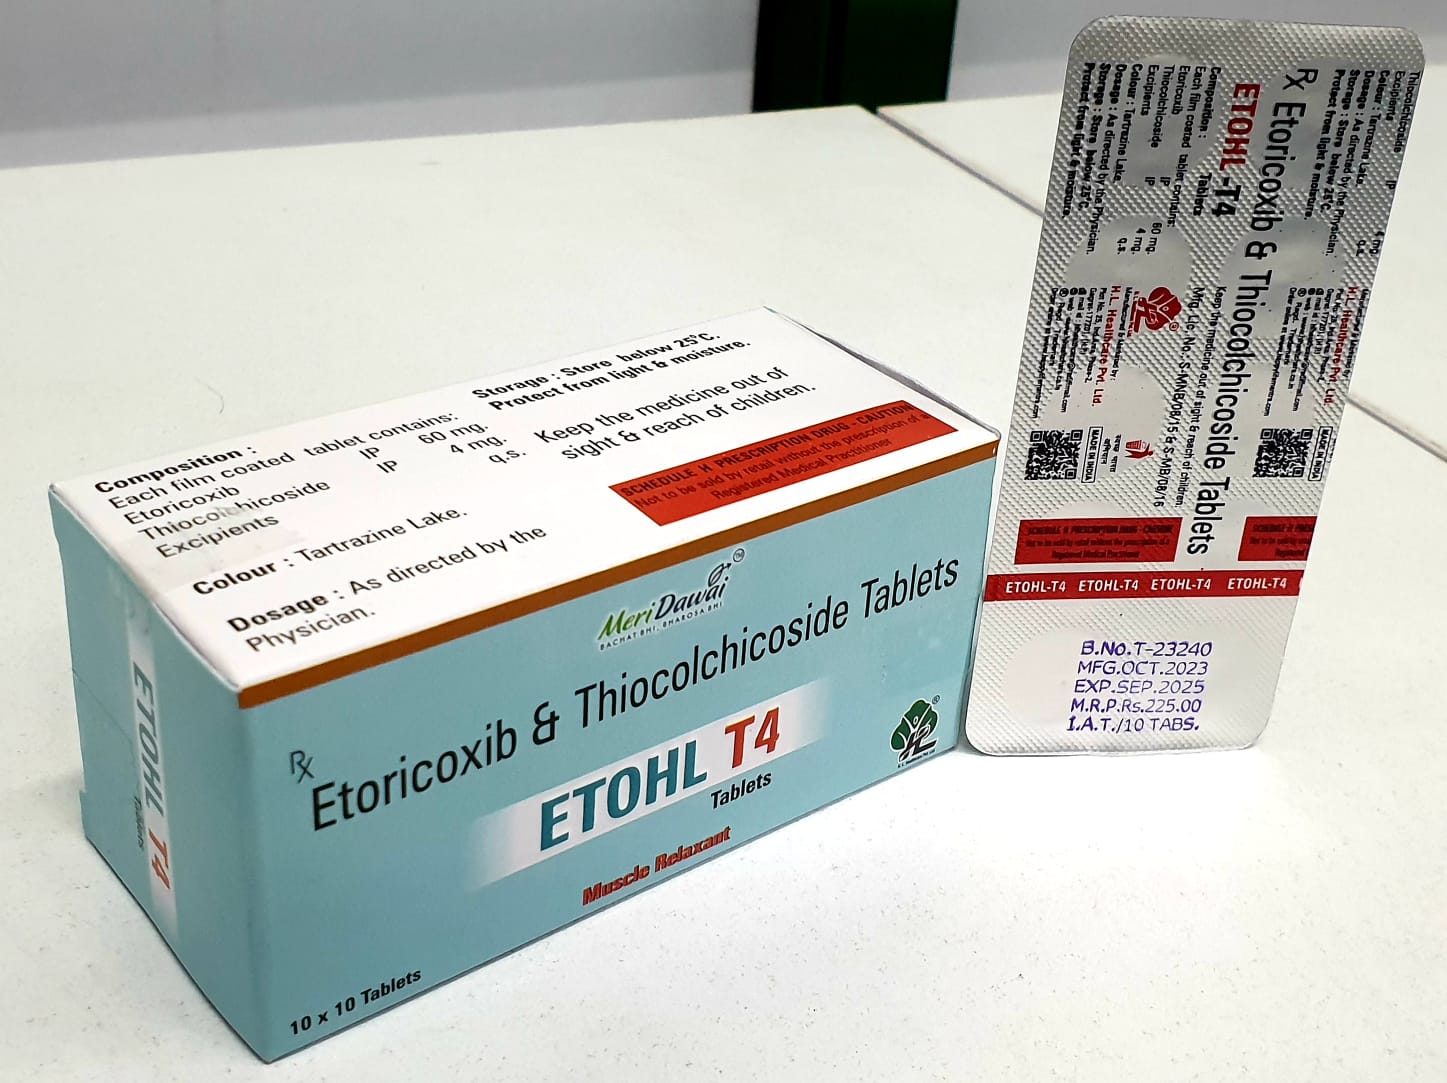 Etoricoxib 90 mg+Thiocolchicoside 4 mg Tablets